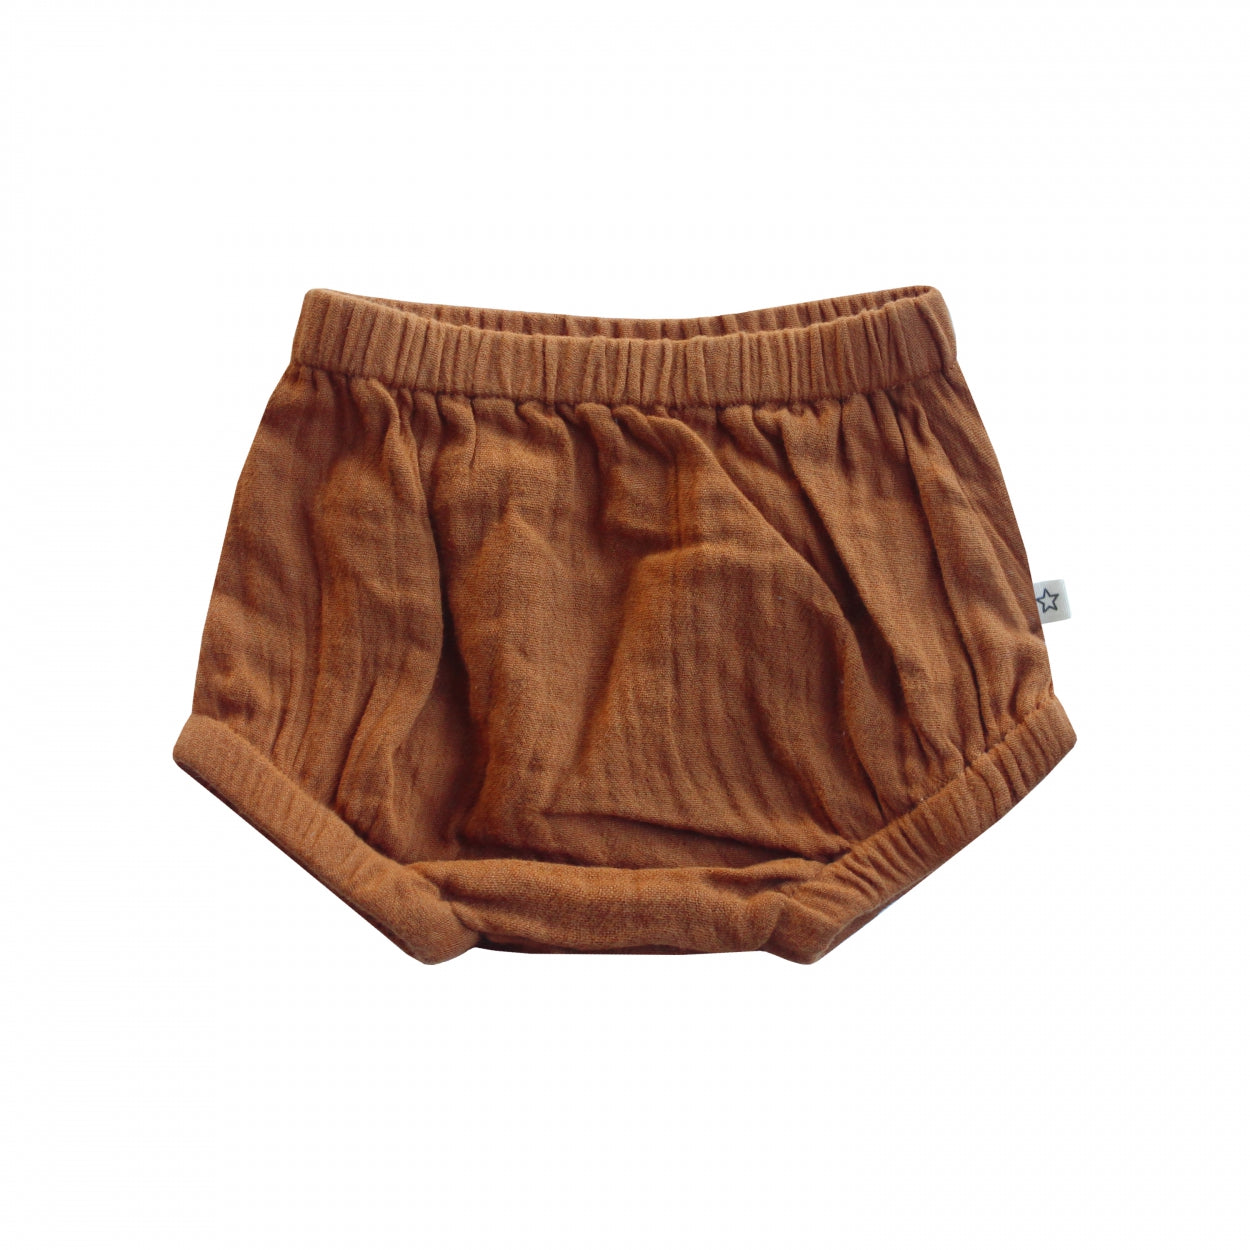 Jongens Pamper shorts Sunset | Angel van Your Wishes in de kleur Glazed Ginger in maat 68.